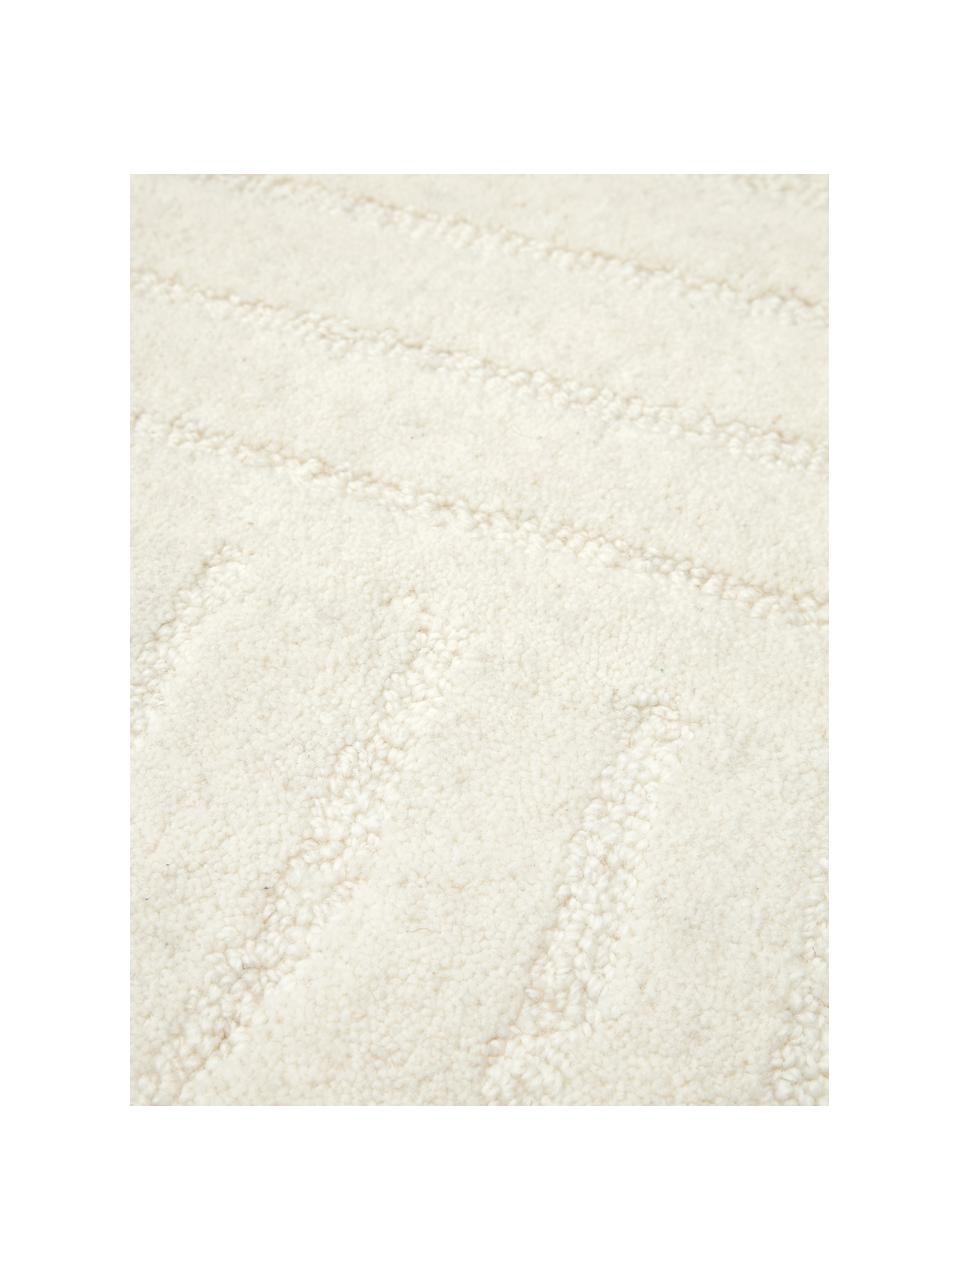 Tappeto rotondo in lana color bianco crema taftato a mano Mason, Retro: 100% cotone Nel caso dei , Bianco crema, Ø 120 cm (taglia S)